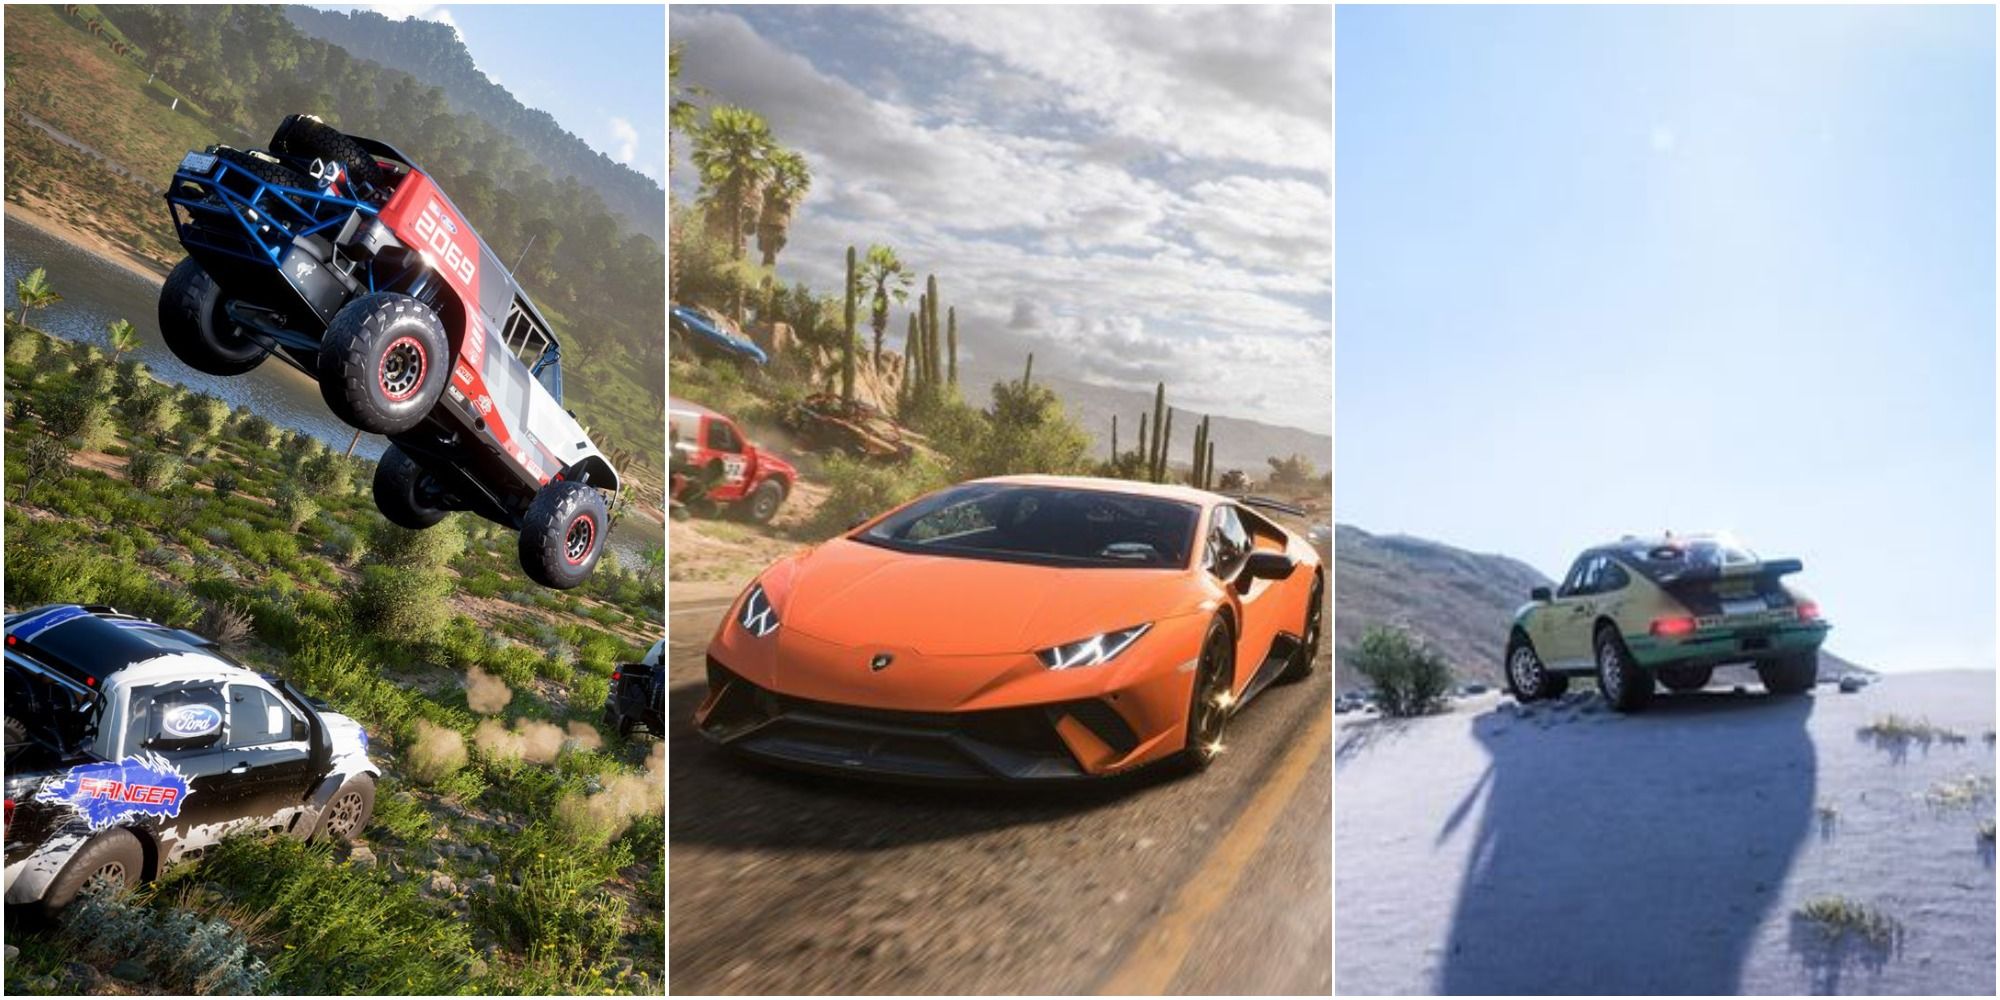 Forza Horizon 2 vs Forza Horizon 3 vs Forza Horizon 4 - Lamborghini Huracan  Sound Comparison 